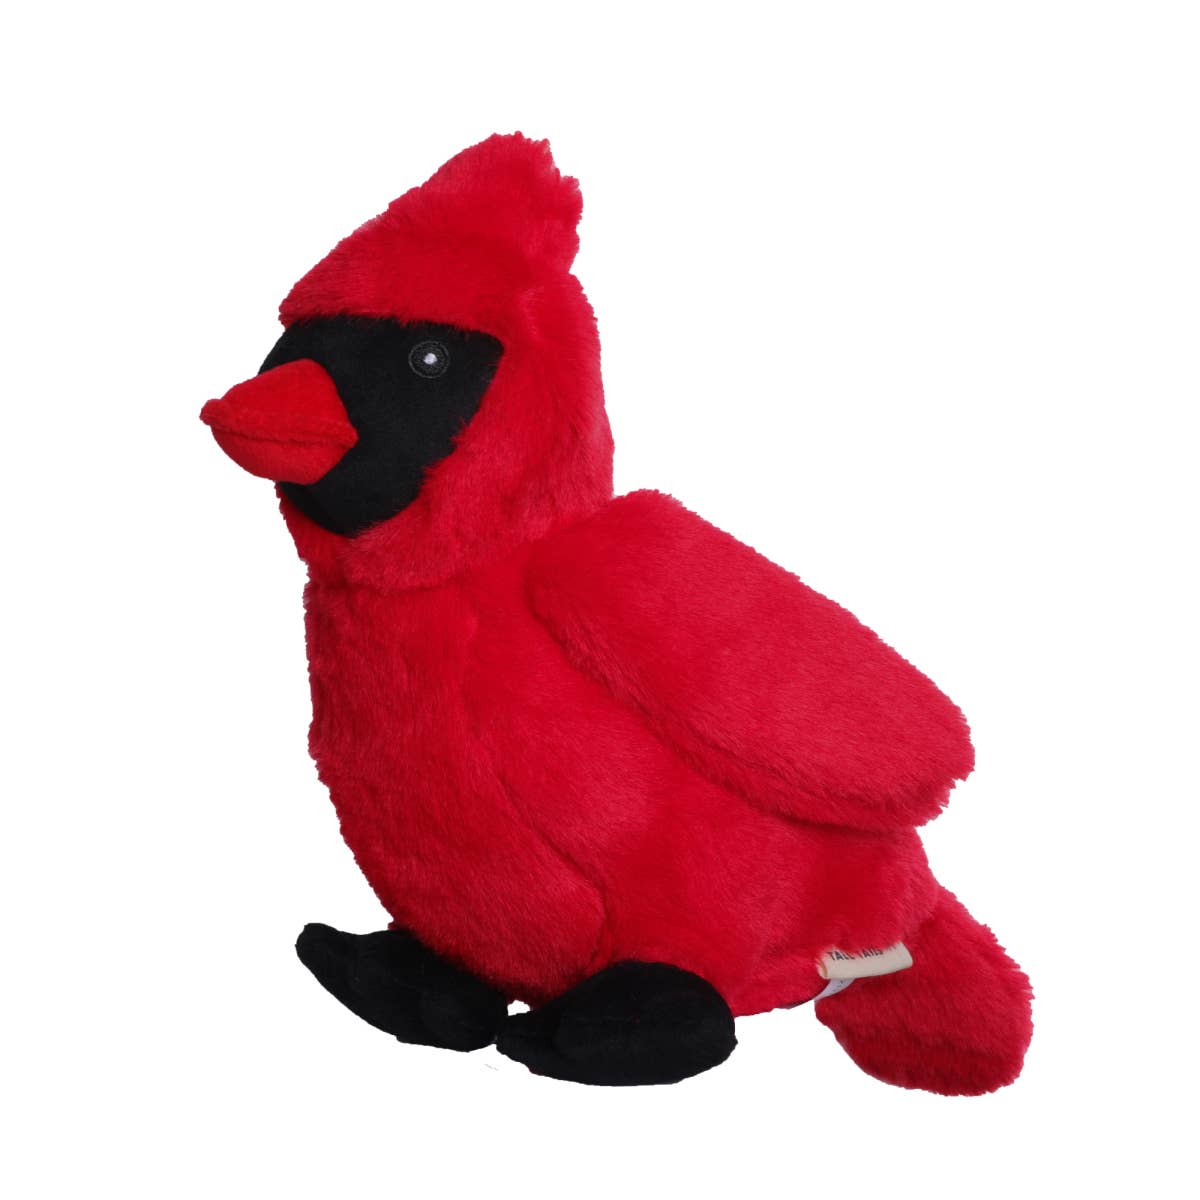 Animated Cardinal Dog Toy